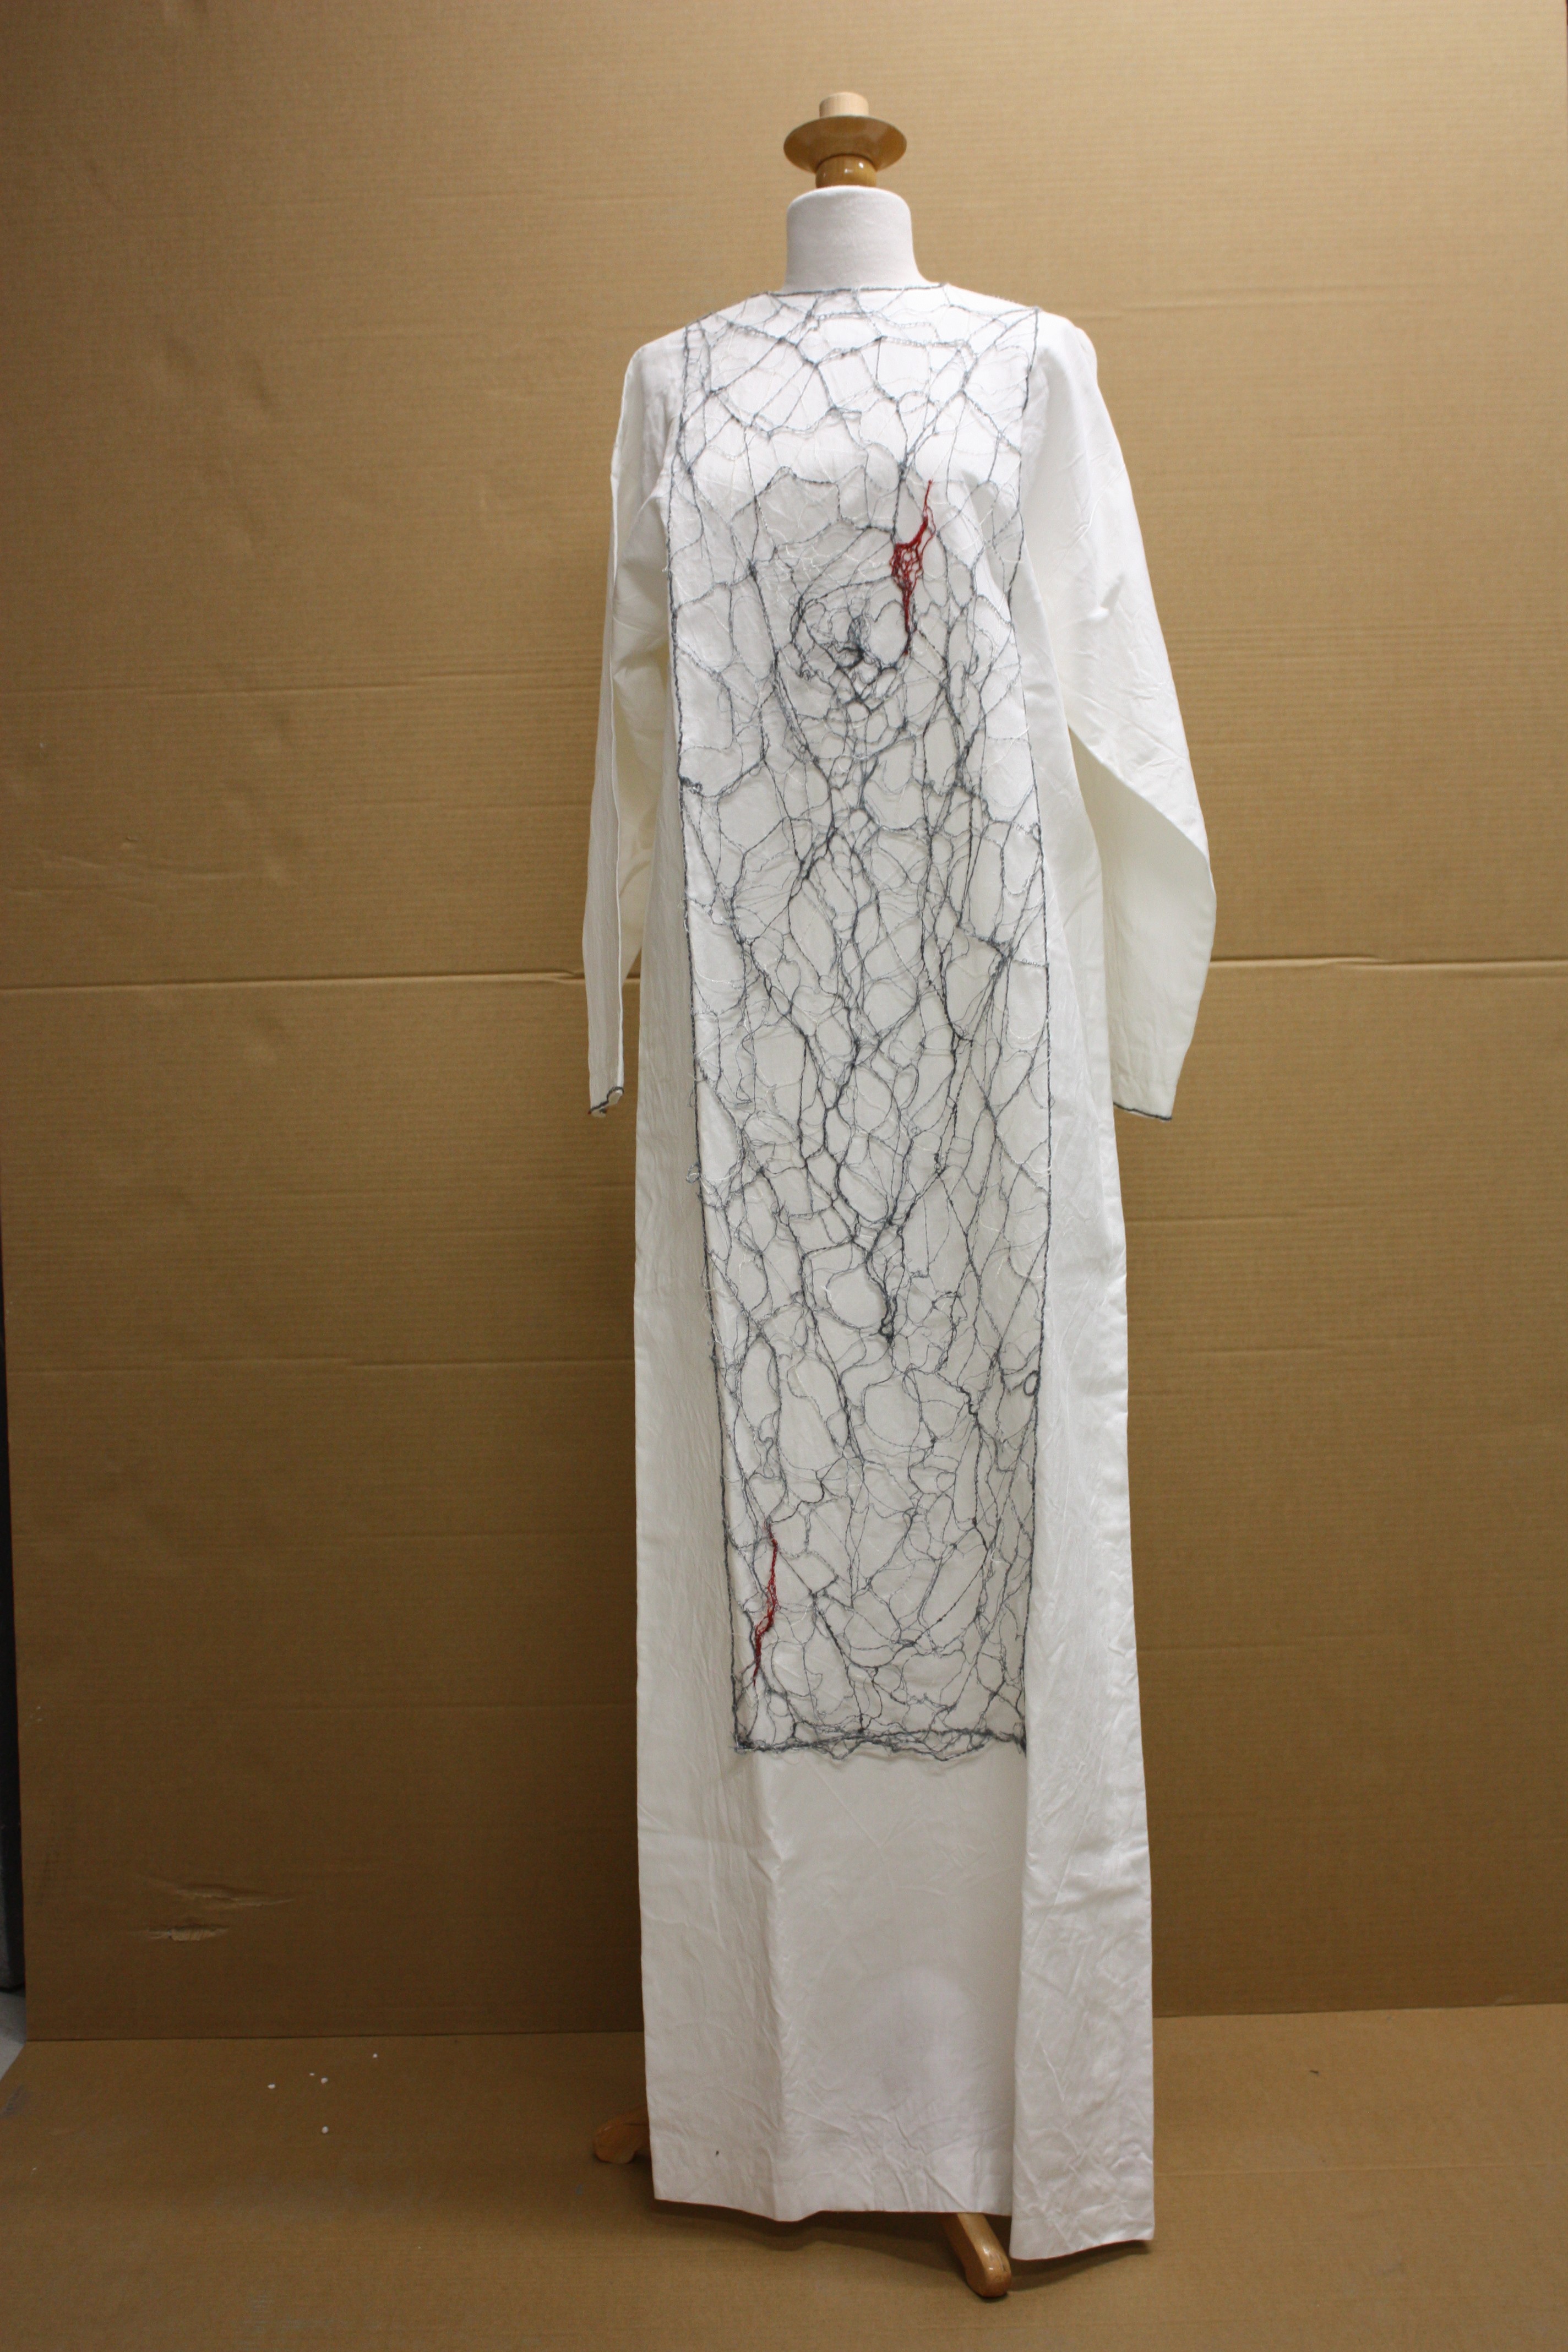 Totenhemd "Gespinst" von Afra Banach (Museum für Sepulkralkultur CC BY-NC-SA)